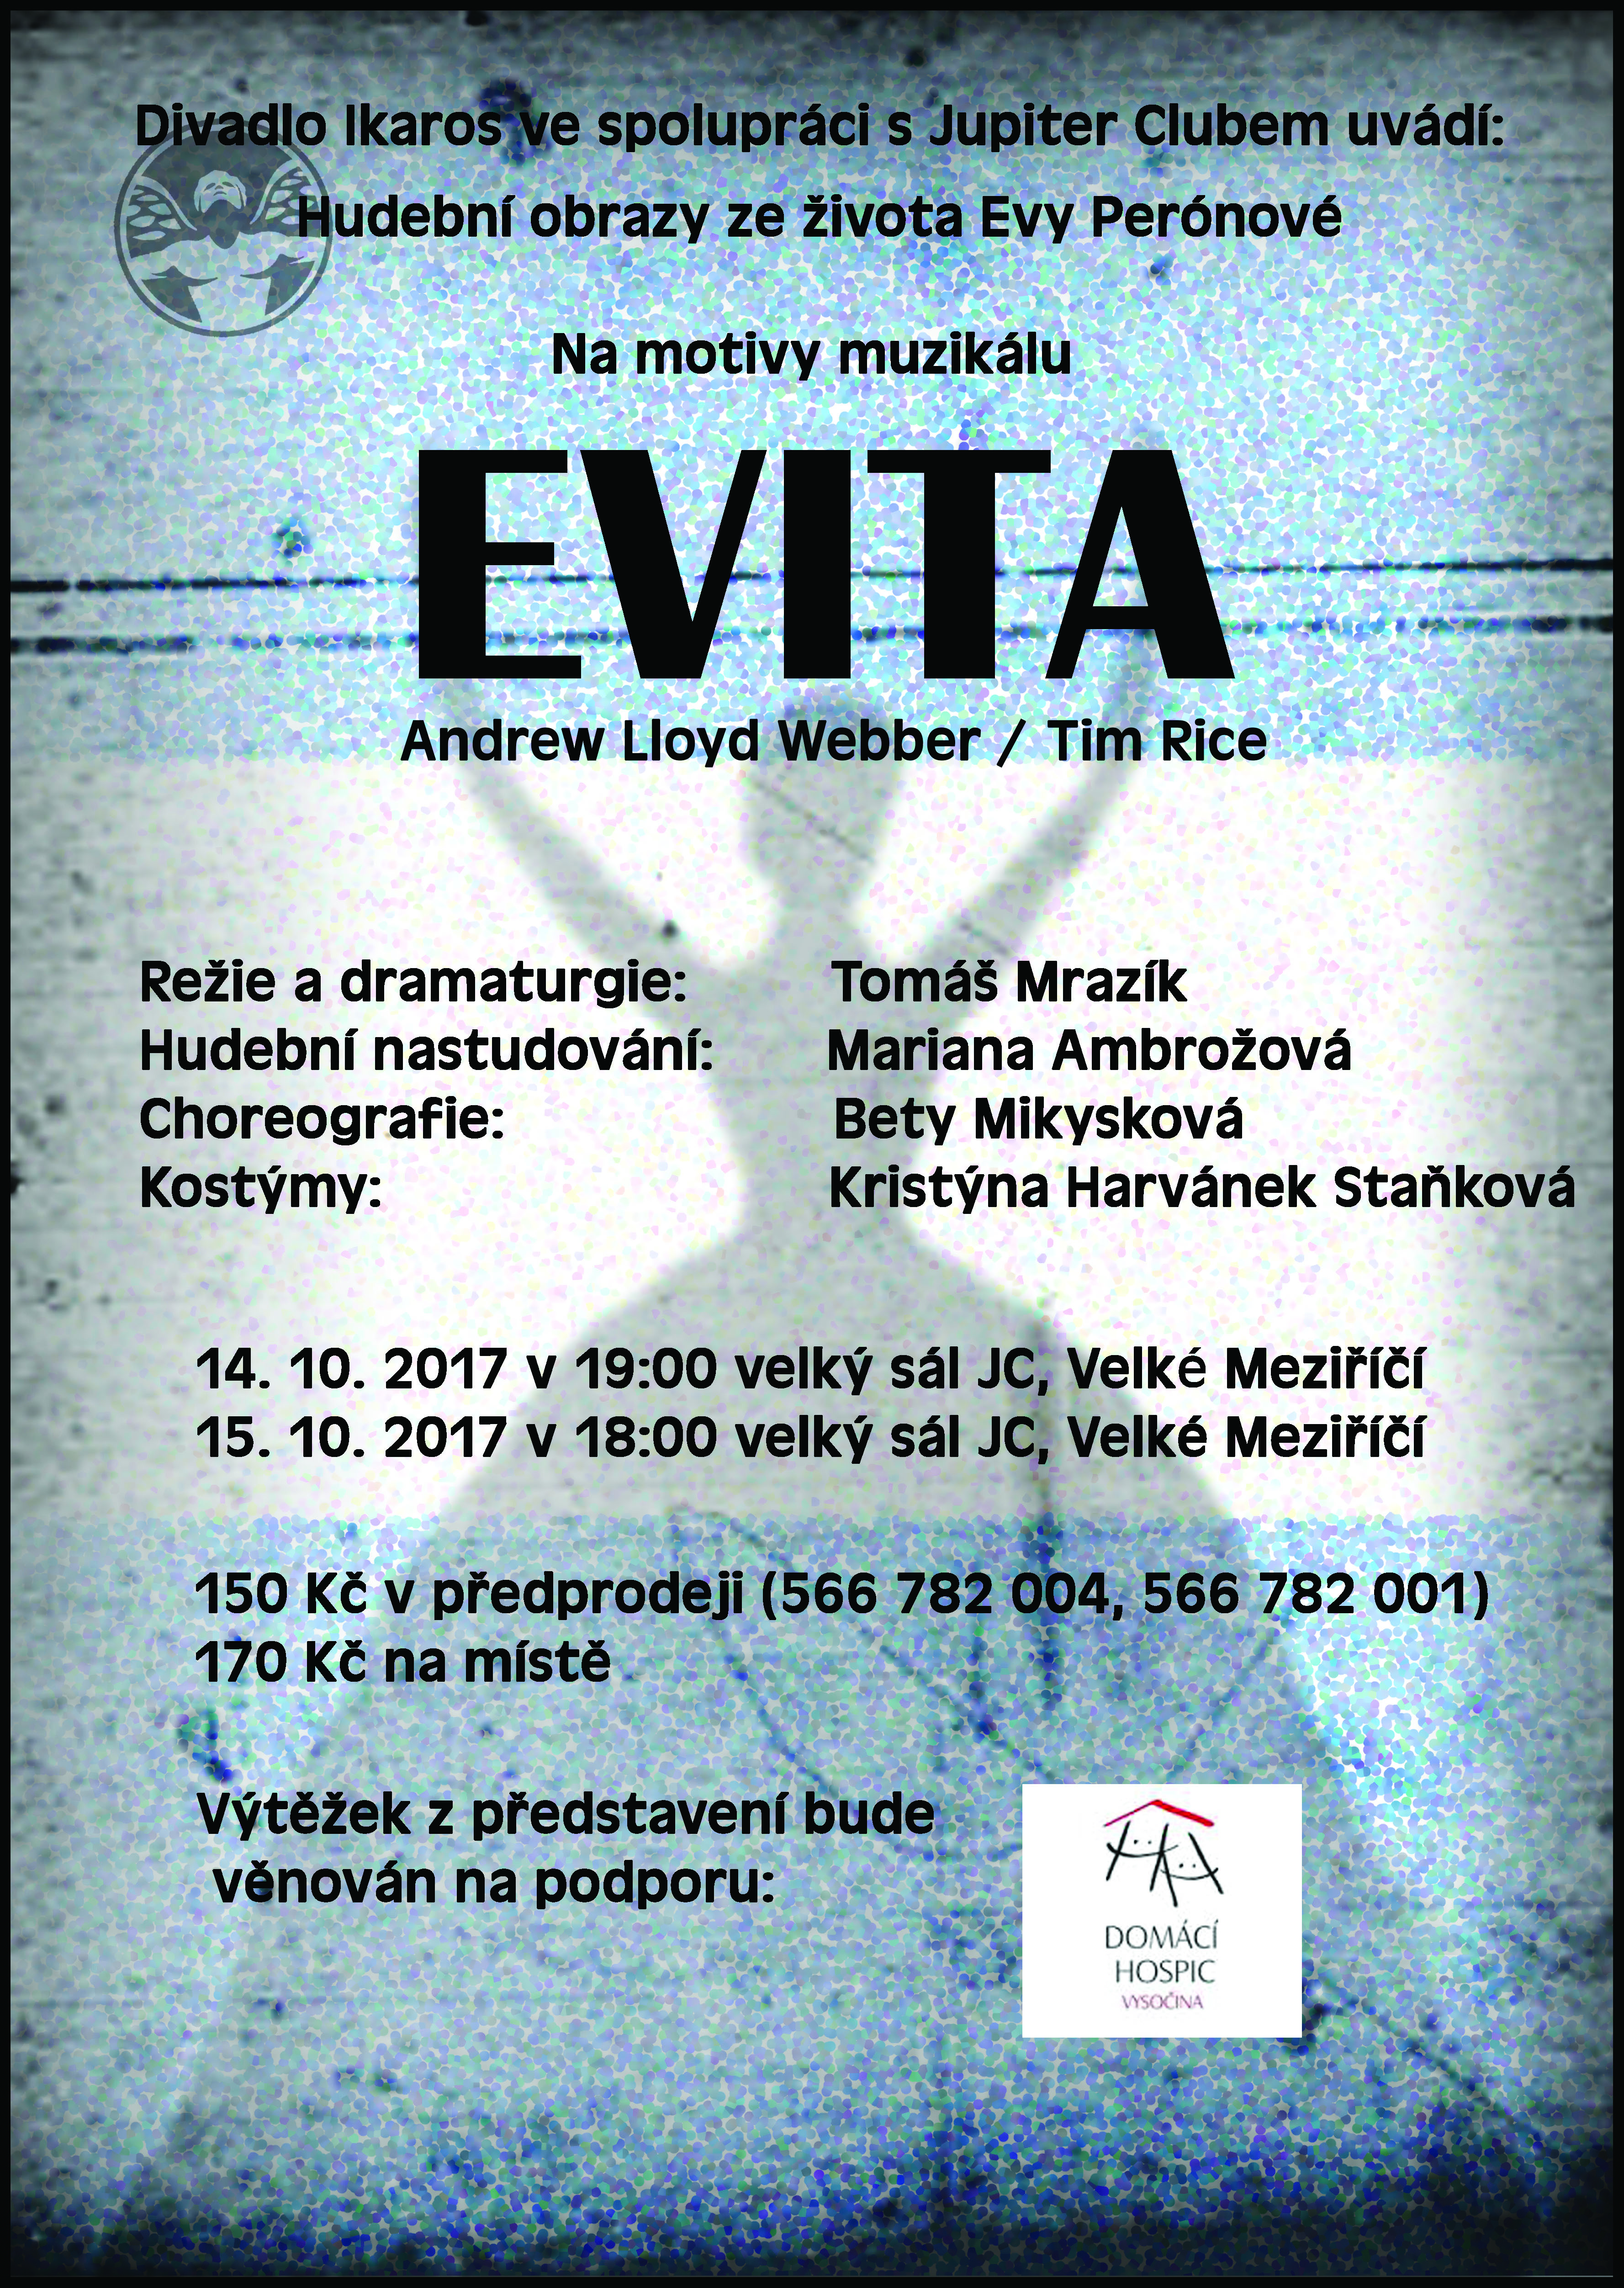 Divadlo Ikaros vás srdečně zve na dvě představení muzikálu EVITA